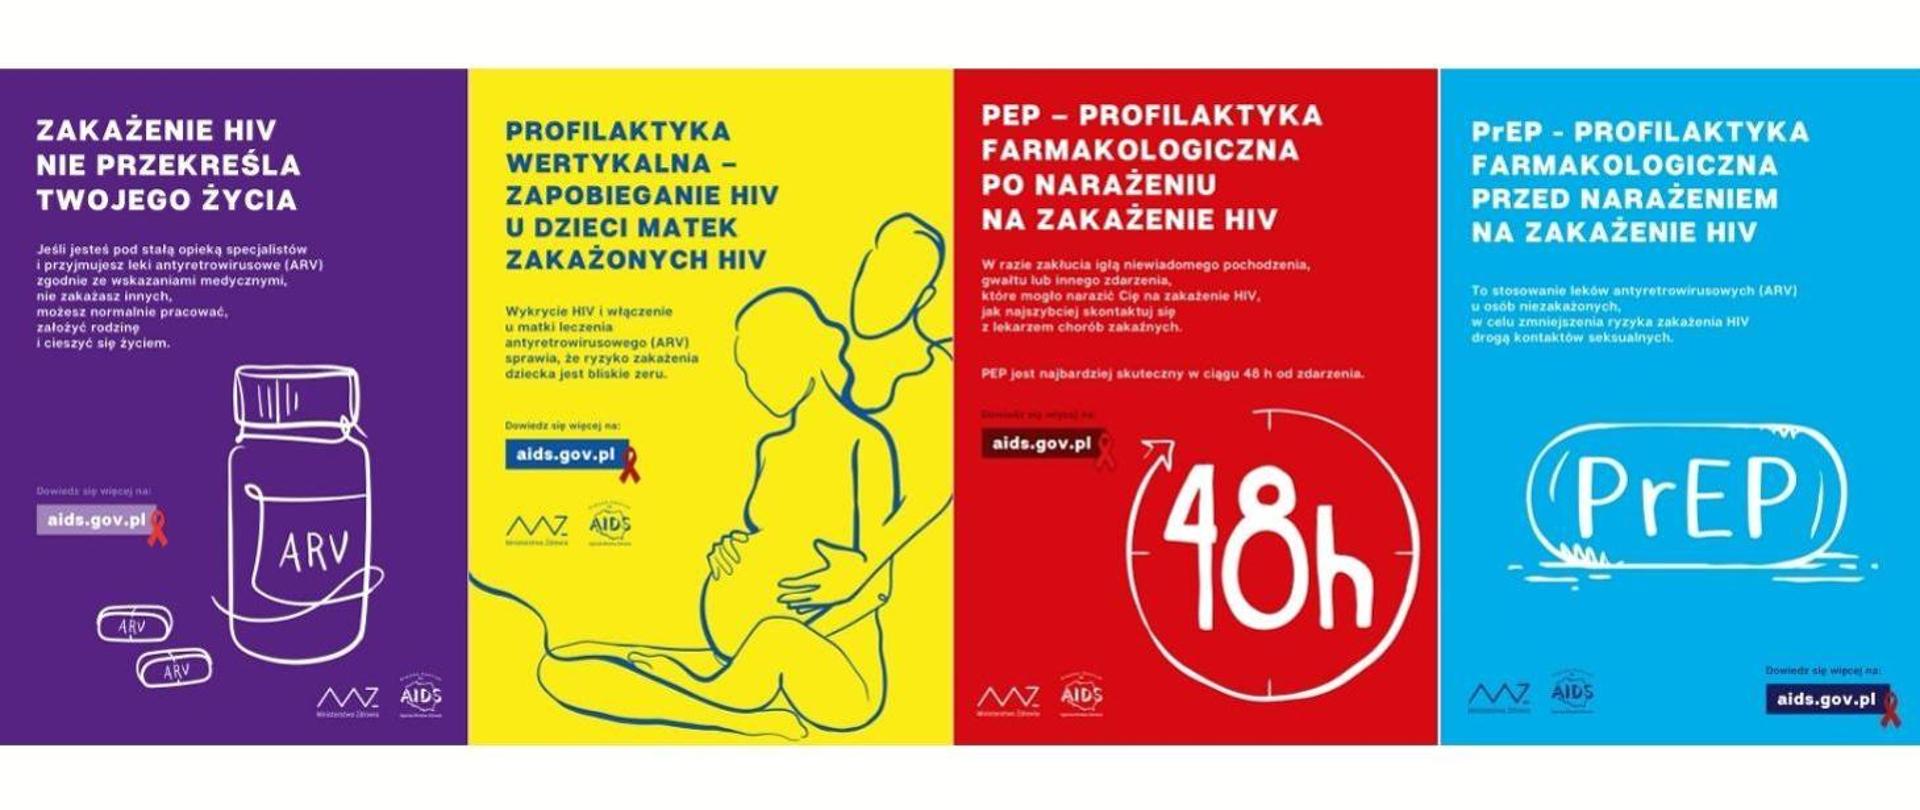 Cztery plakaty w kolorach: fioletowym, żółtym, czerwonym i niebieskim, dotyczące profilaktyki HIV